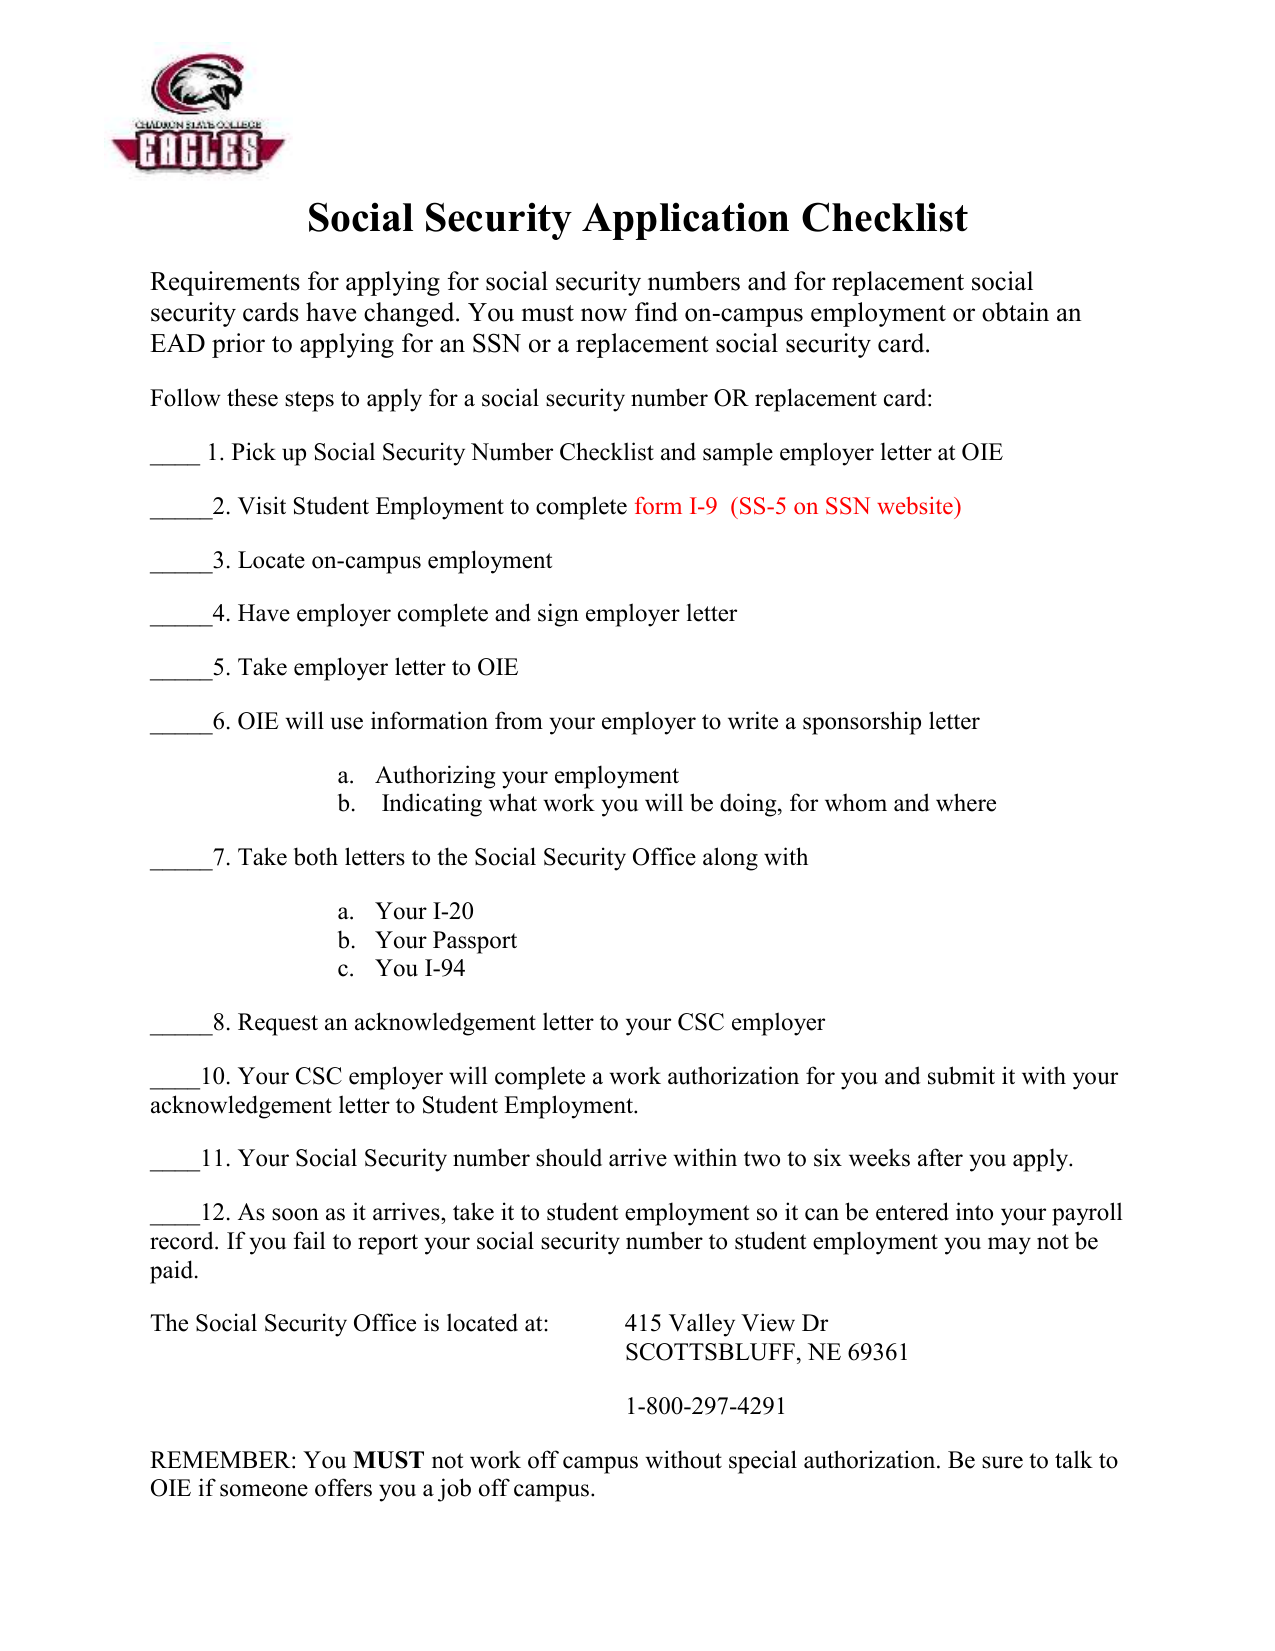 Social Security Checklist